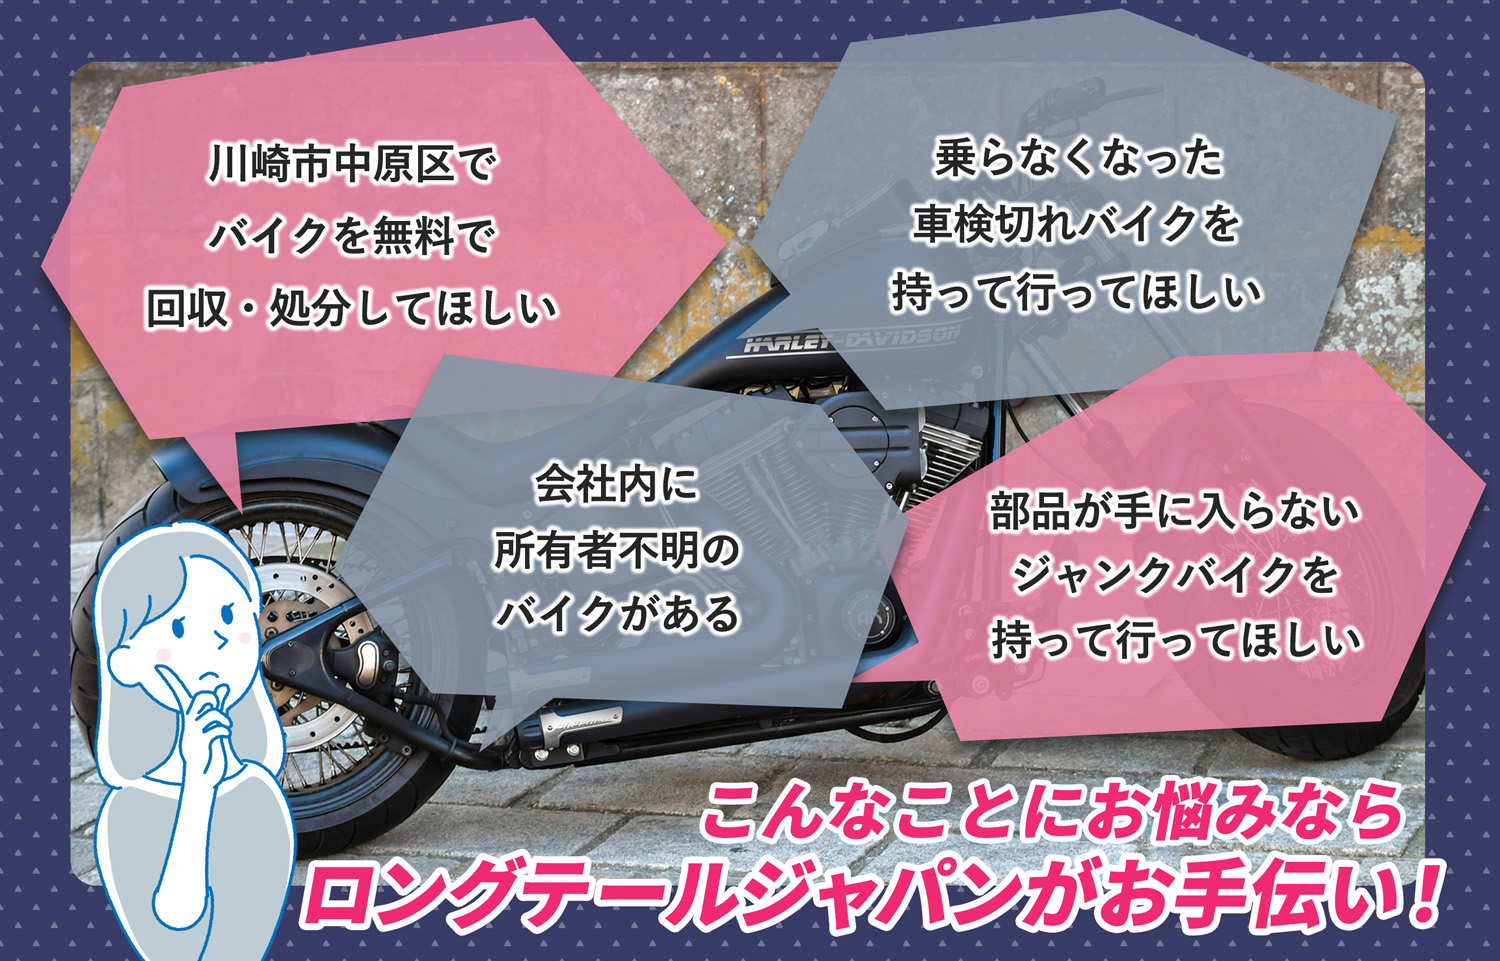 川崎市中原区でこんなバイクの処分にお困りでしたらバイク無料回収処分隊がお手伝いいたします。